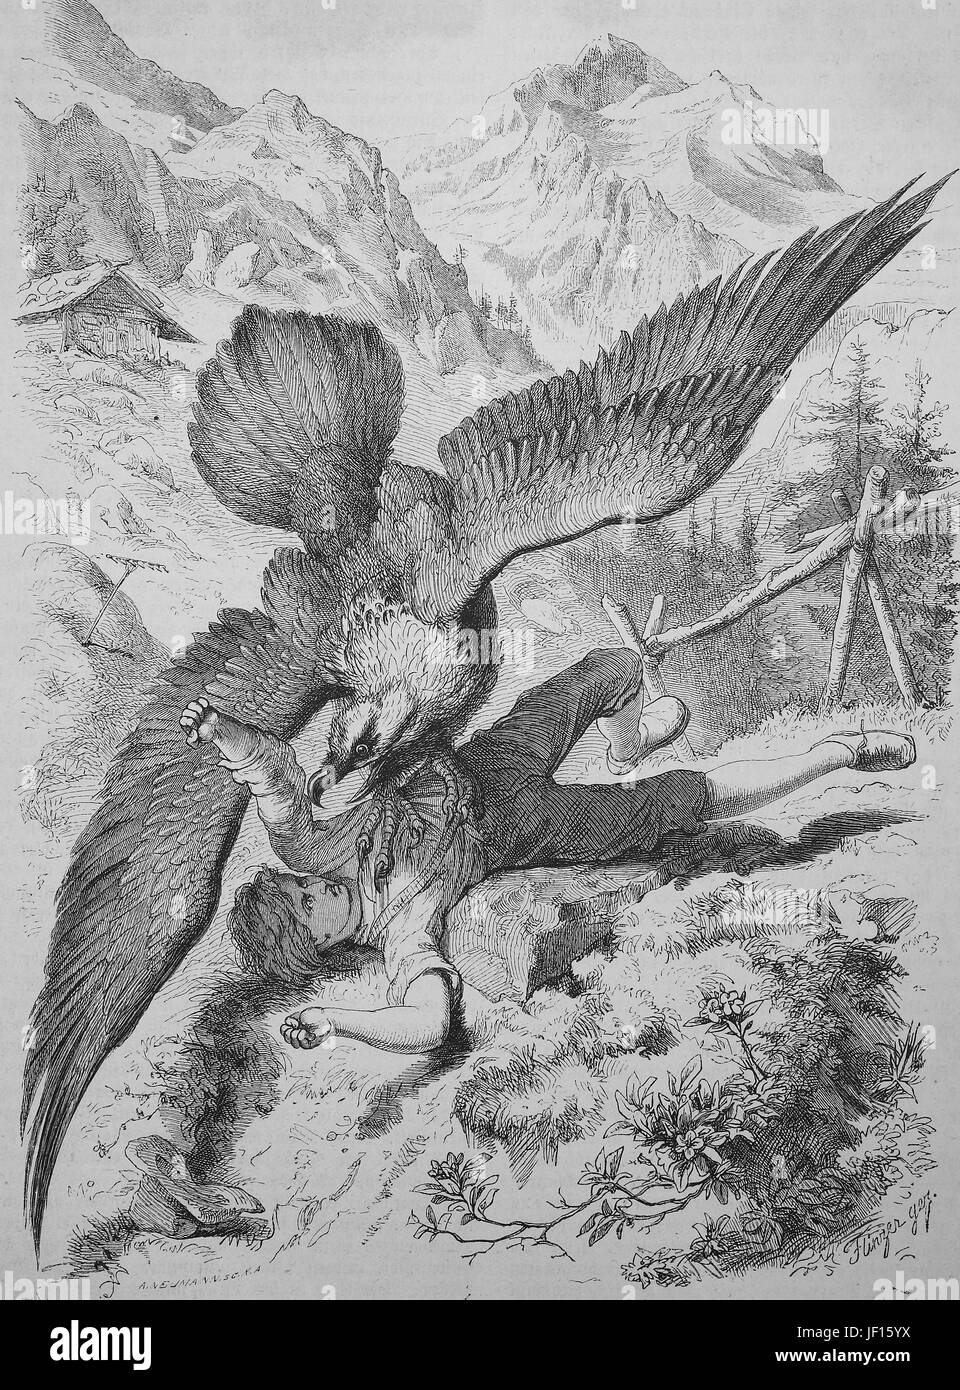 Les attaques d'un vautour un garçon, historique illustration de la vie animale dans le monde alpin, l'amélioration numérique reproduction à partir d'un tirage original de 1888 Banque D'Images